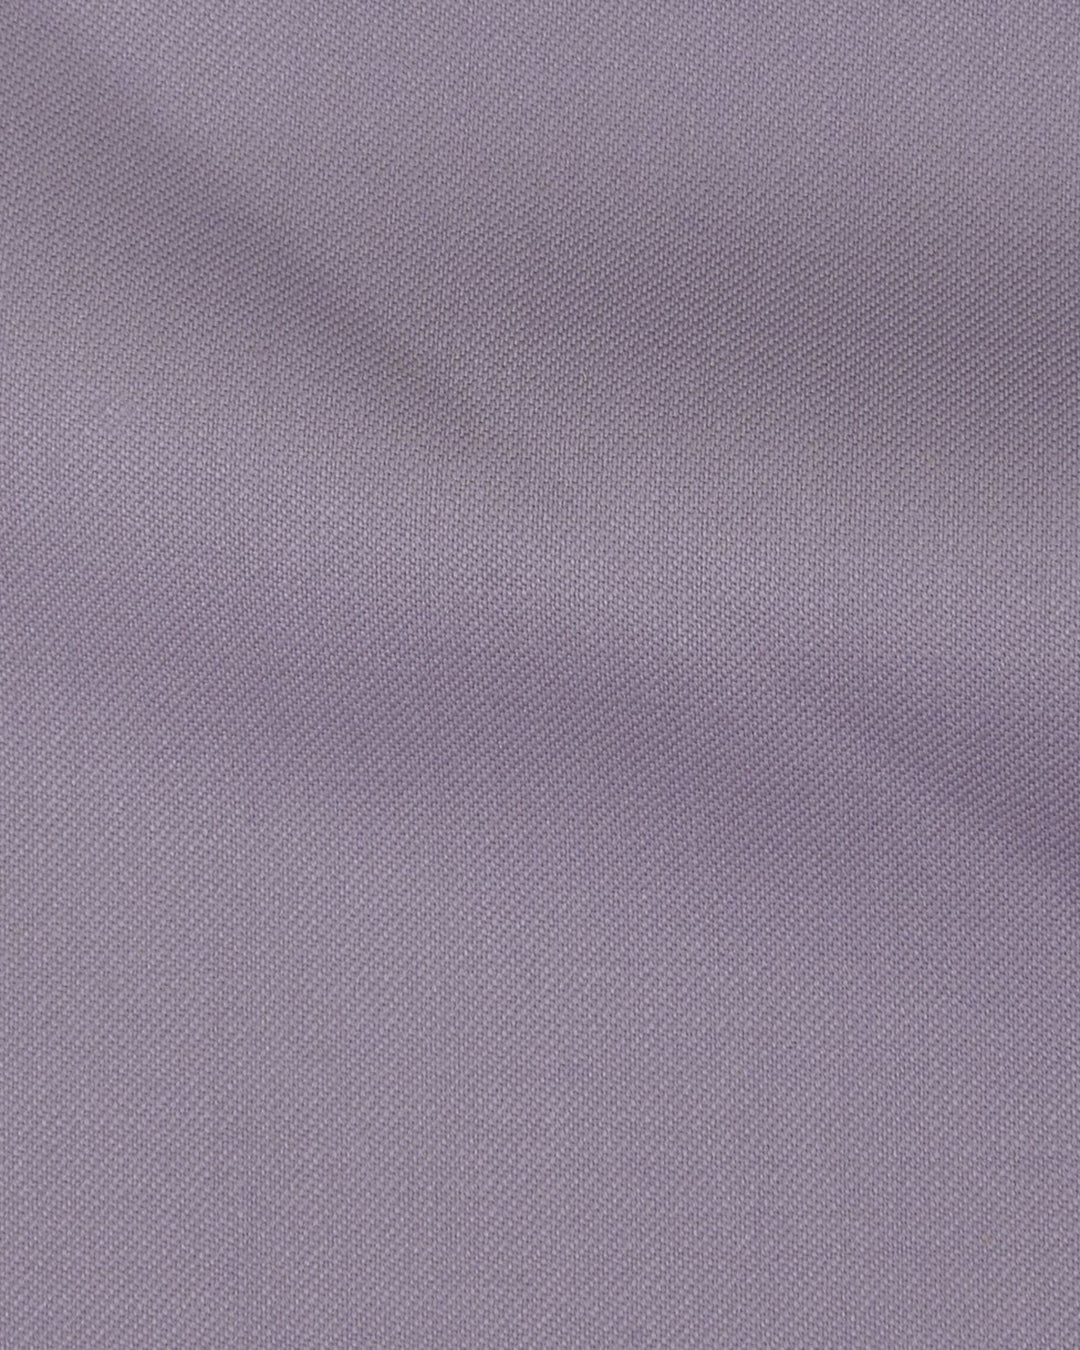 VBC 100% Wool: Purple Fade Twill